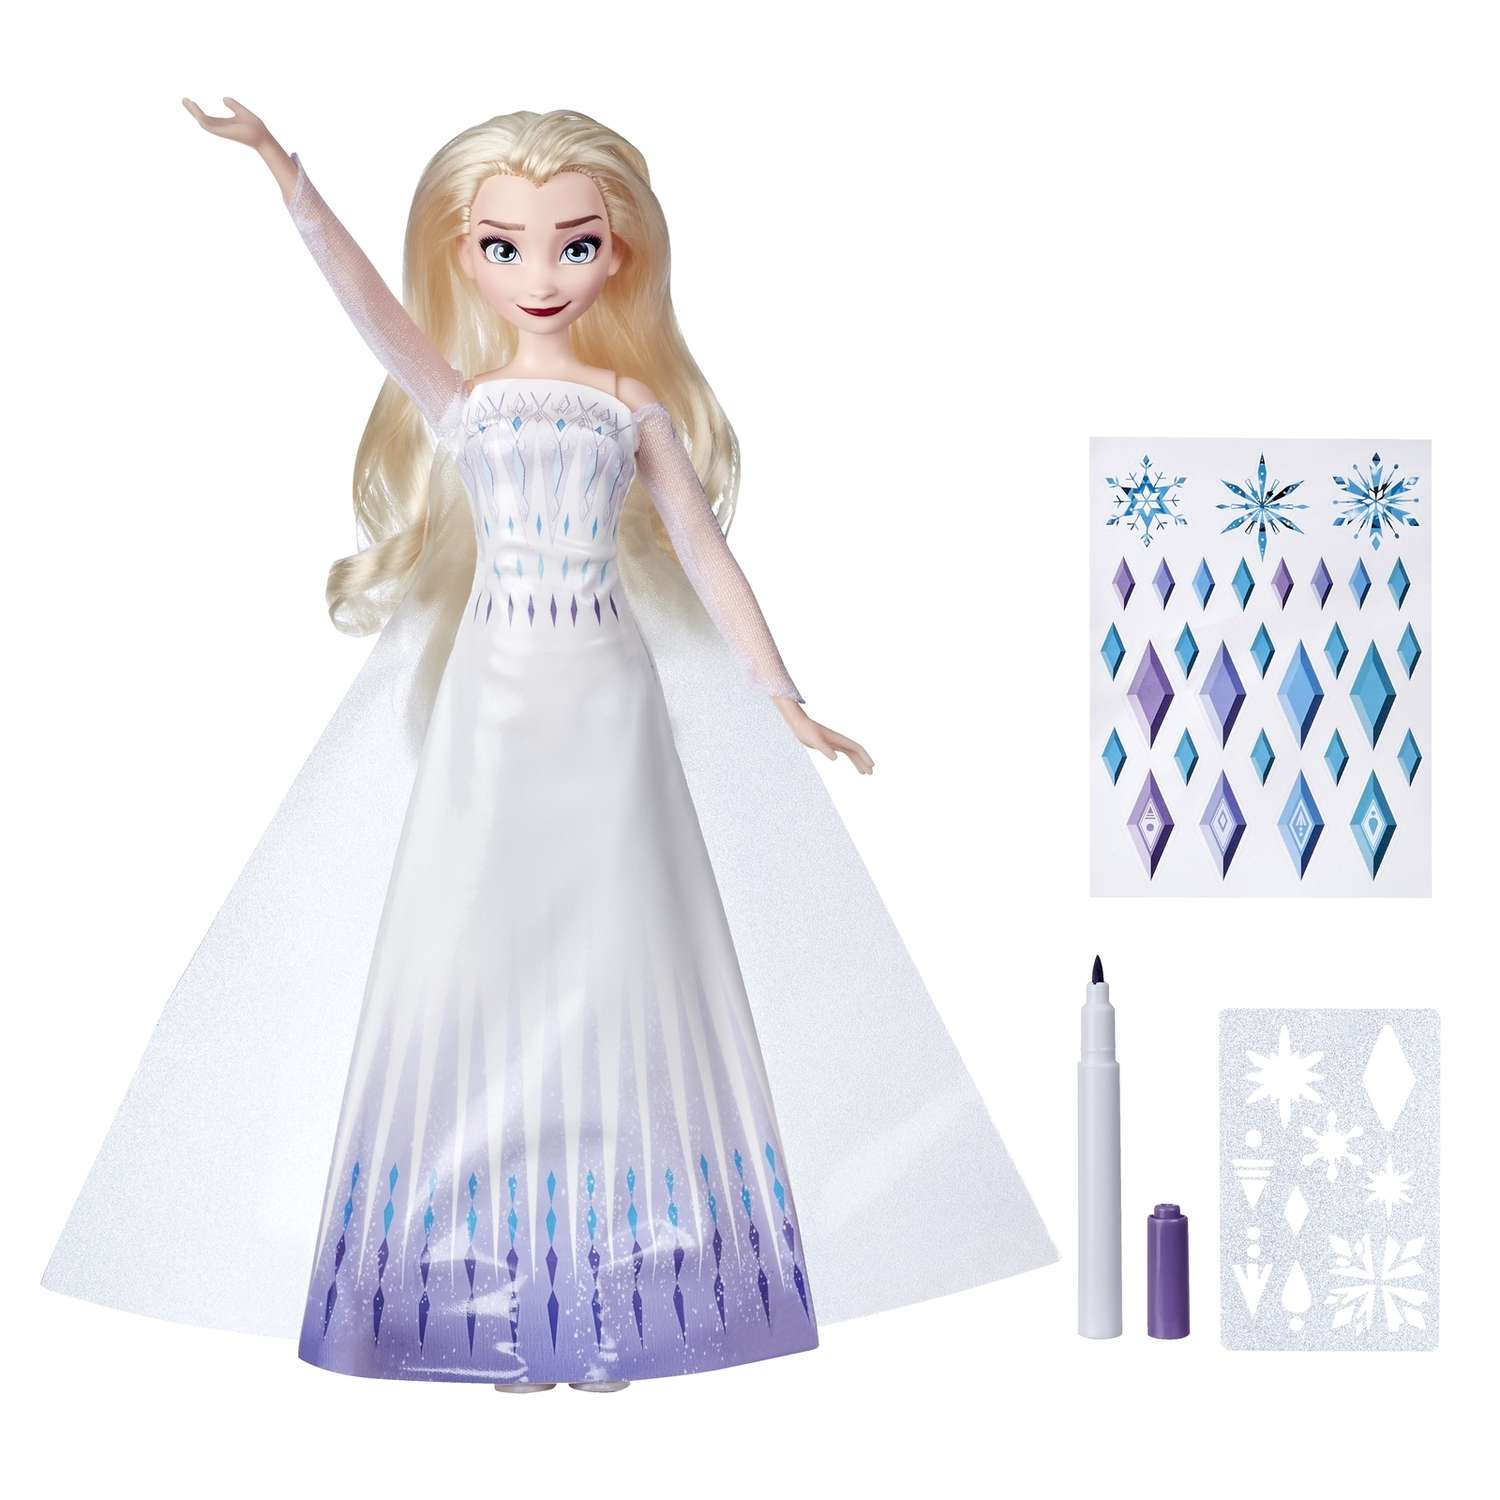 Кукла Disney Frozen Холодное Сердце 2 c аксессуарами E99665L0 E99665L0 - фото 1